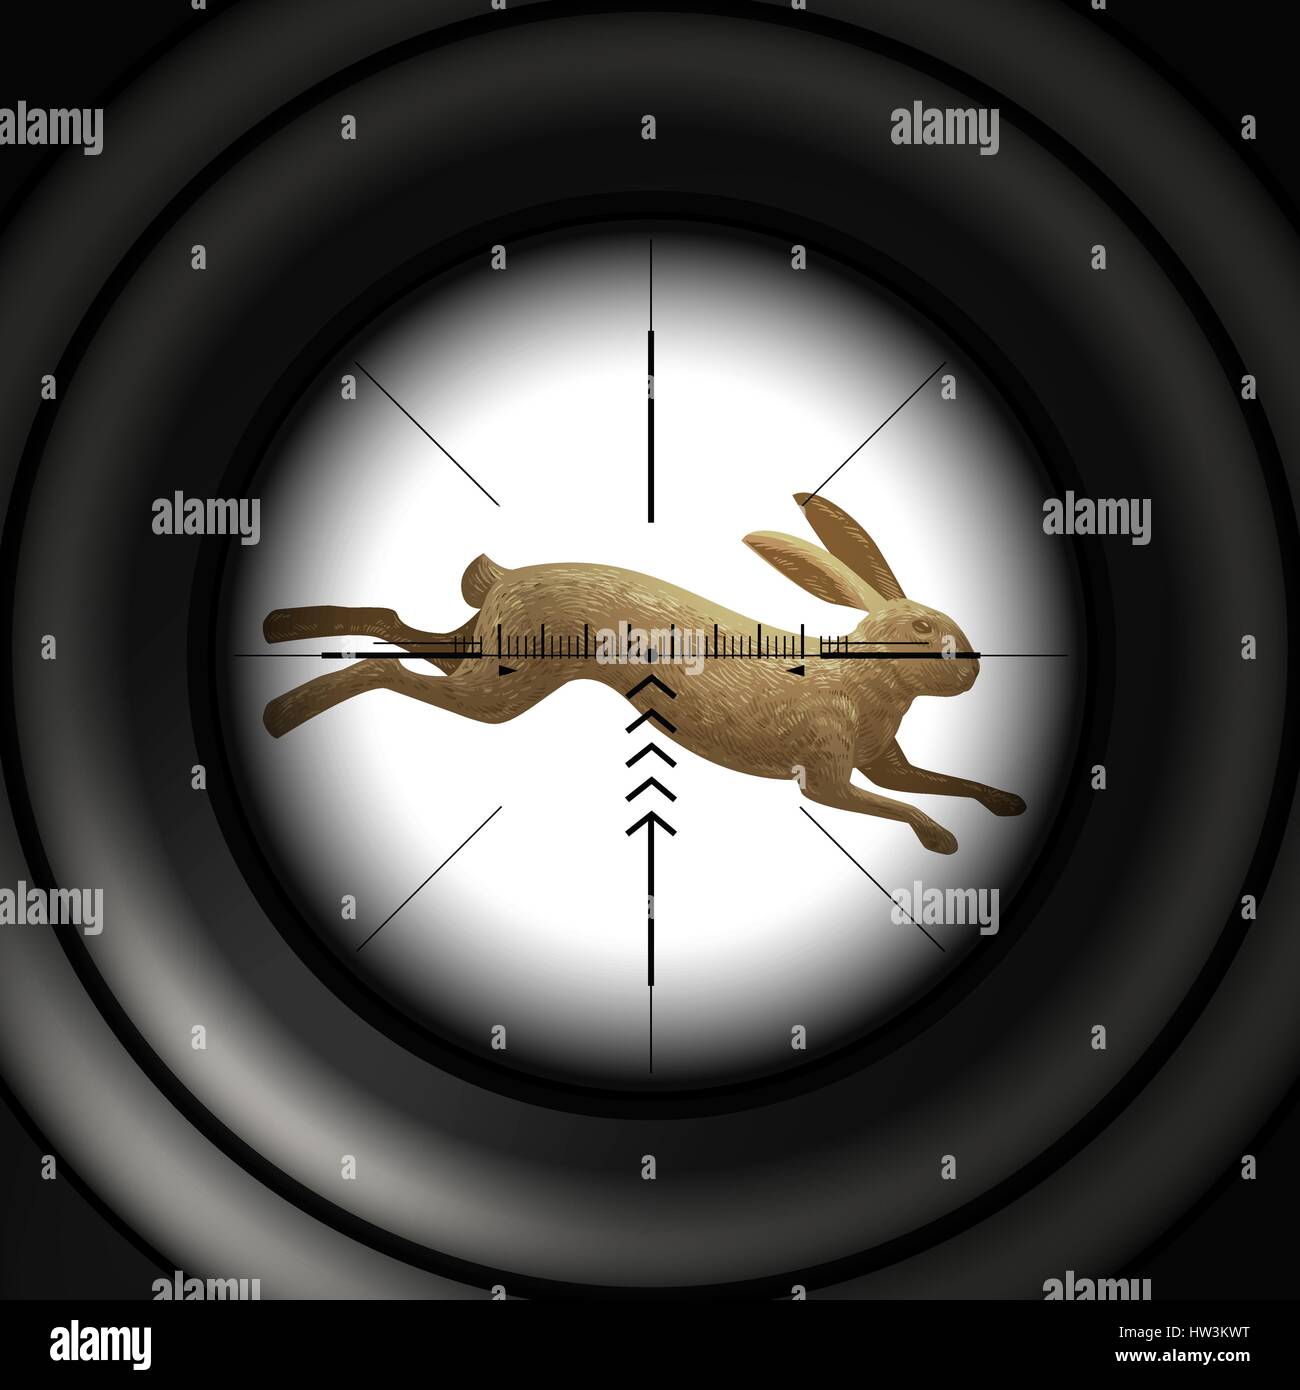 Hunting season. Running hare, wild rabbit. Sniper scope, vector illustration Stock Vector